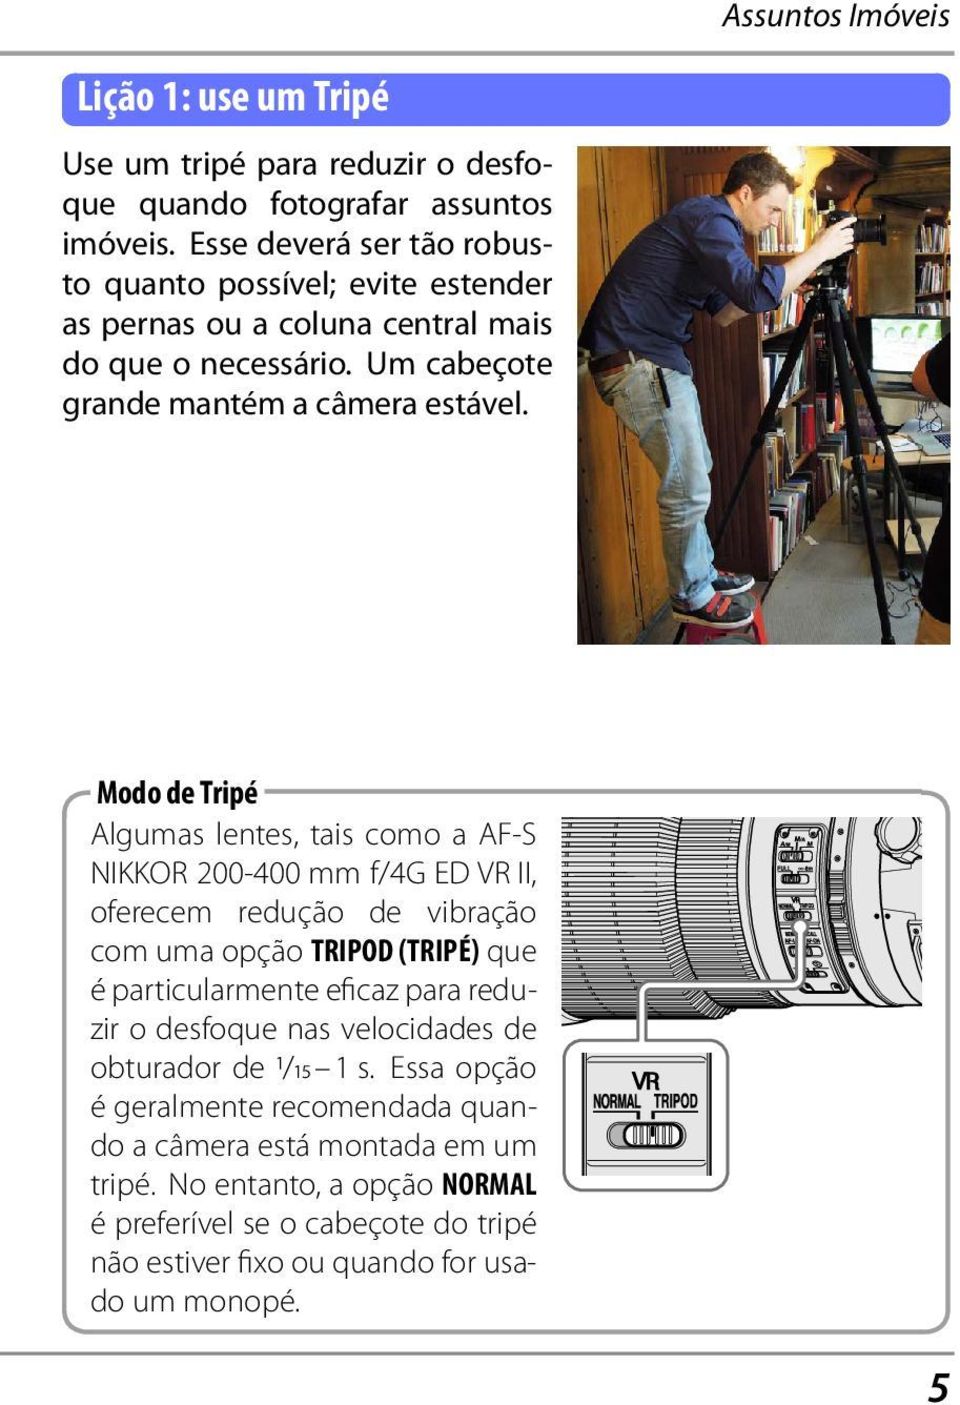 Modo de Tripé Algumas lentes, tais como a AF-S NIKKOR 200-400 mm f/4g ED VR II, oferecem redução de vibração com uma opção TRIPOD (TRIPÉ) que é particularmente eficaz para